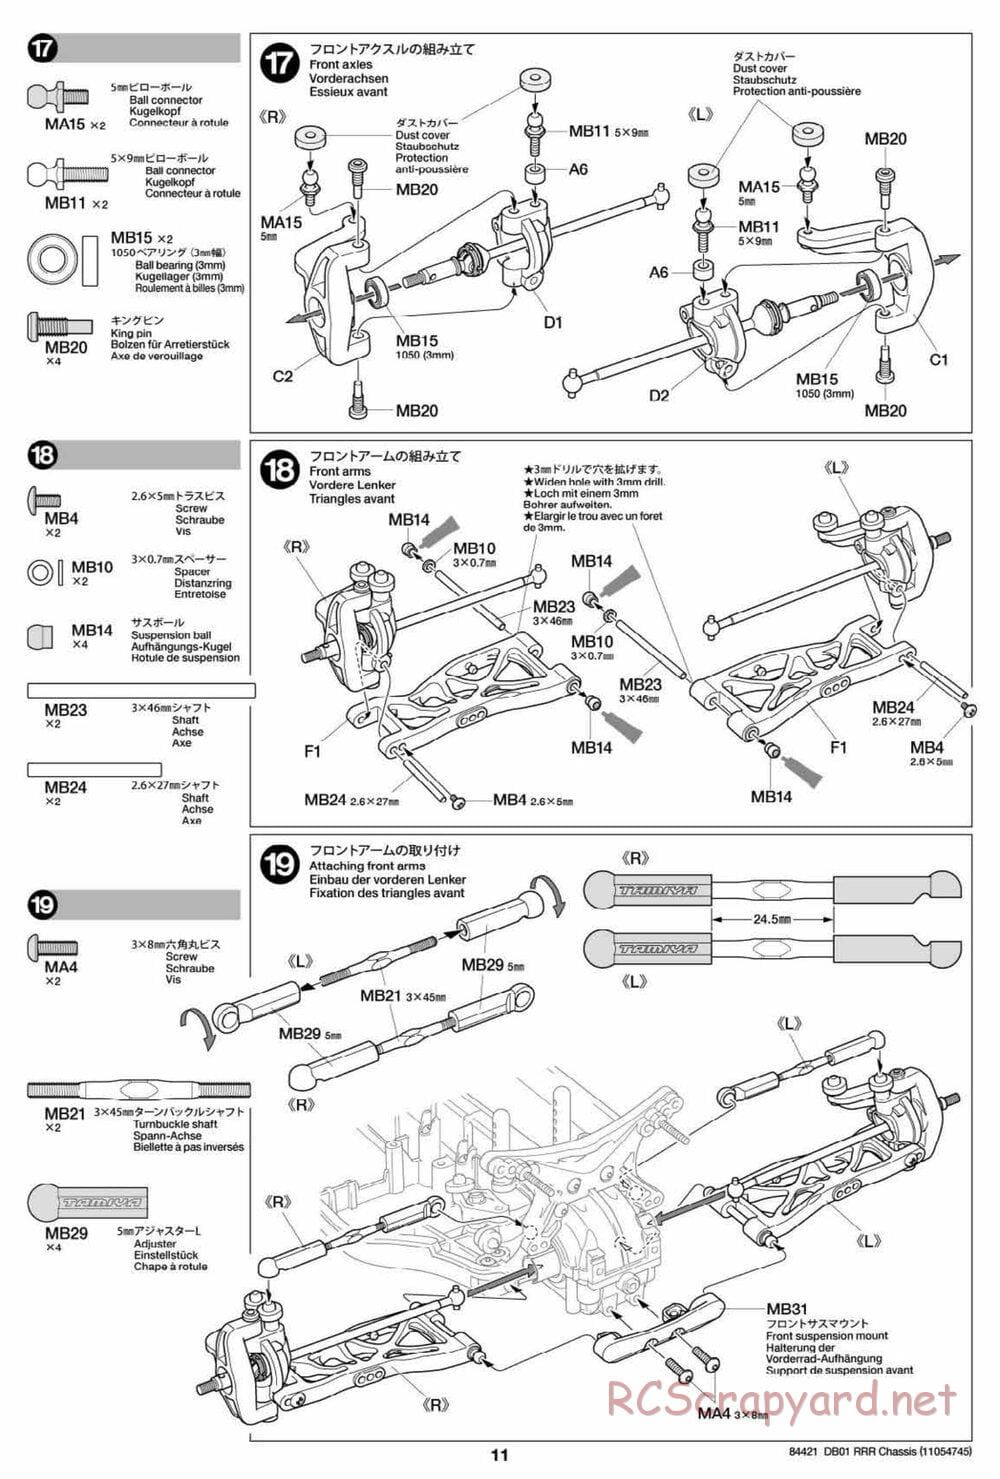 Tamiya - DB-01 RRR Chassis - Manual - Page 11